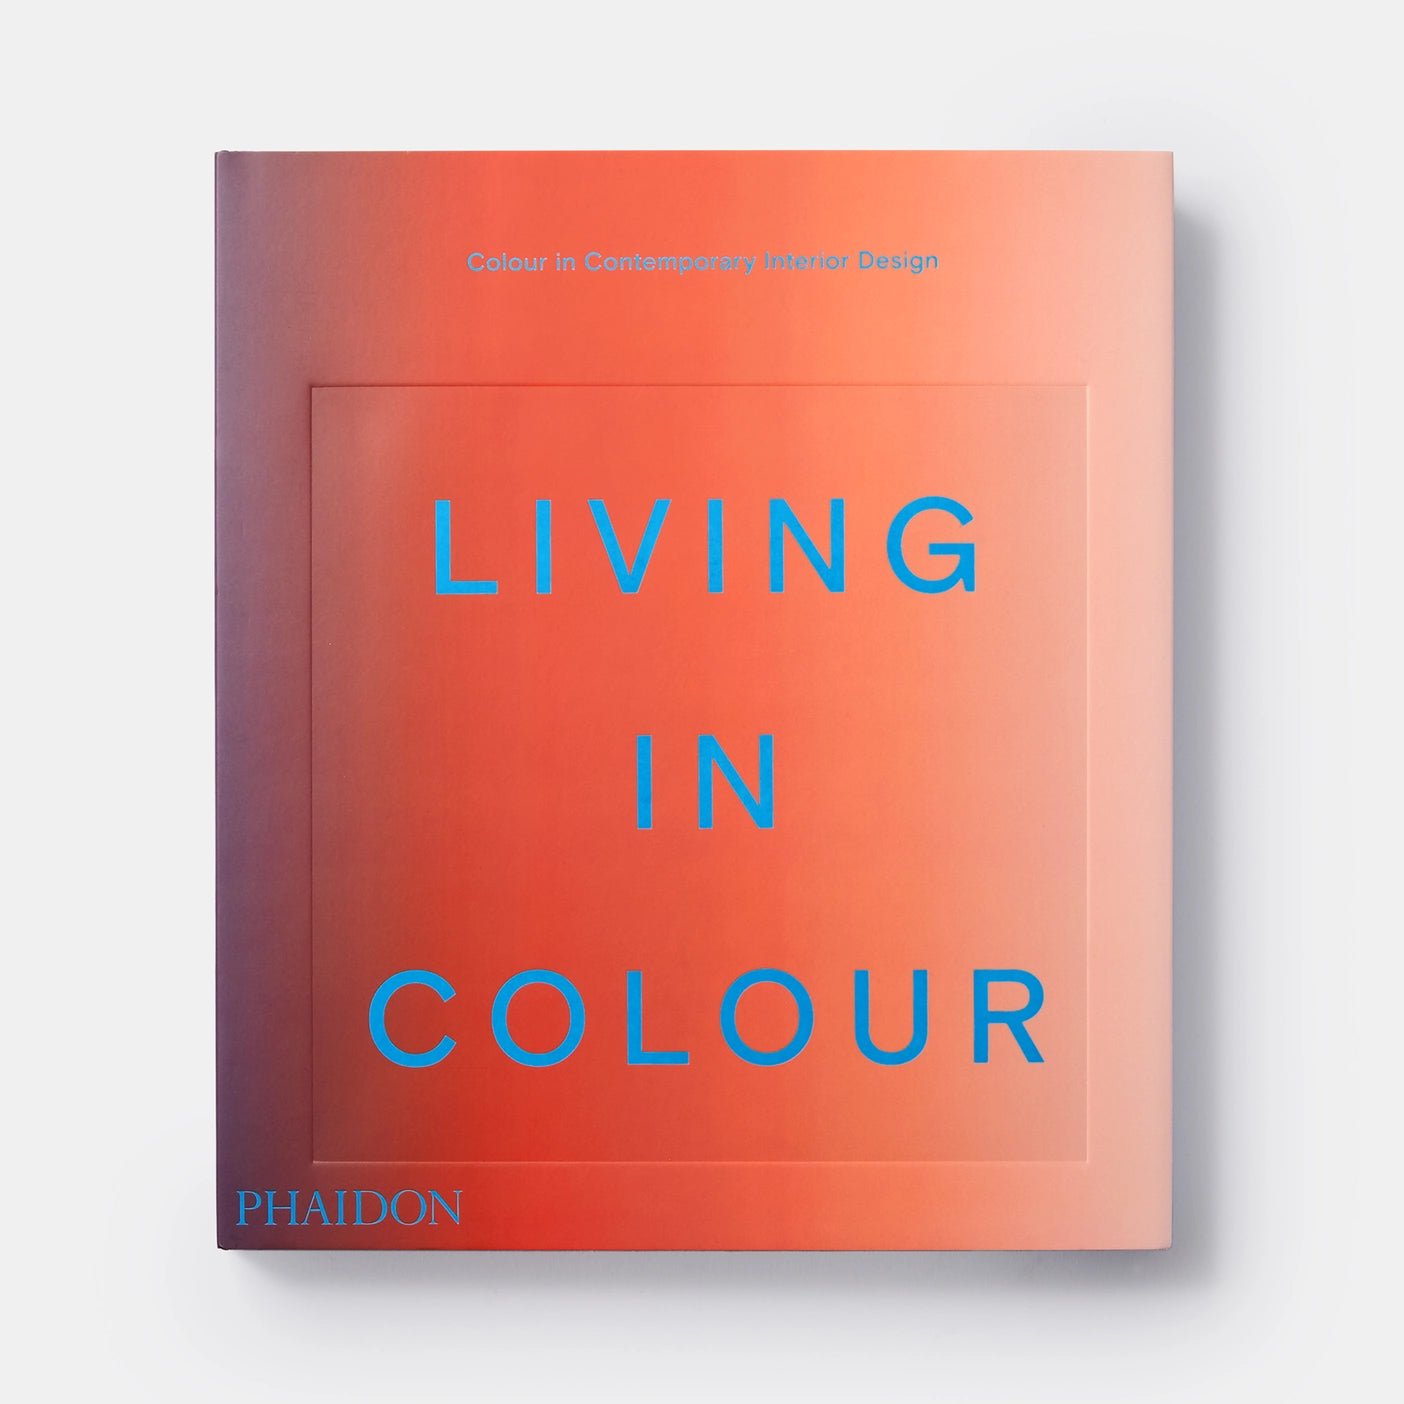 Living in Colour: Colour in Contemporary Interior Design